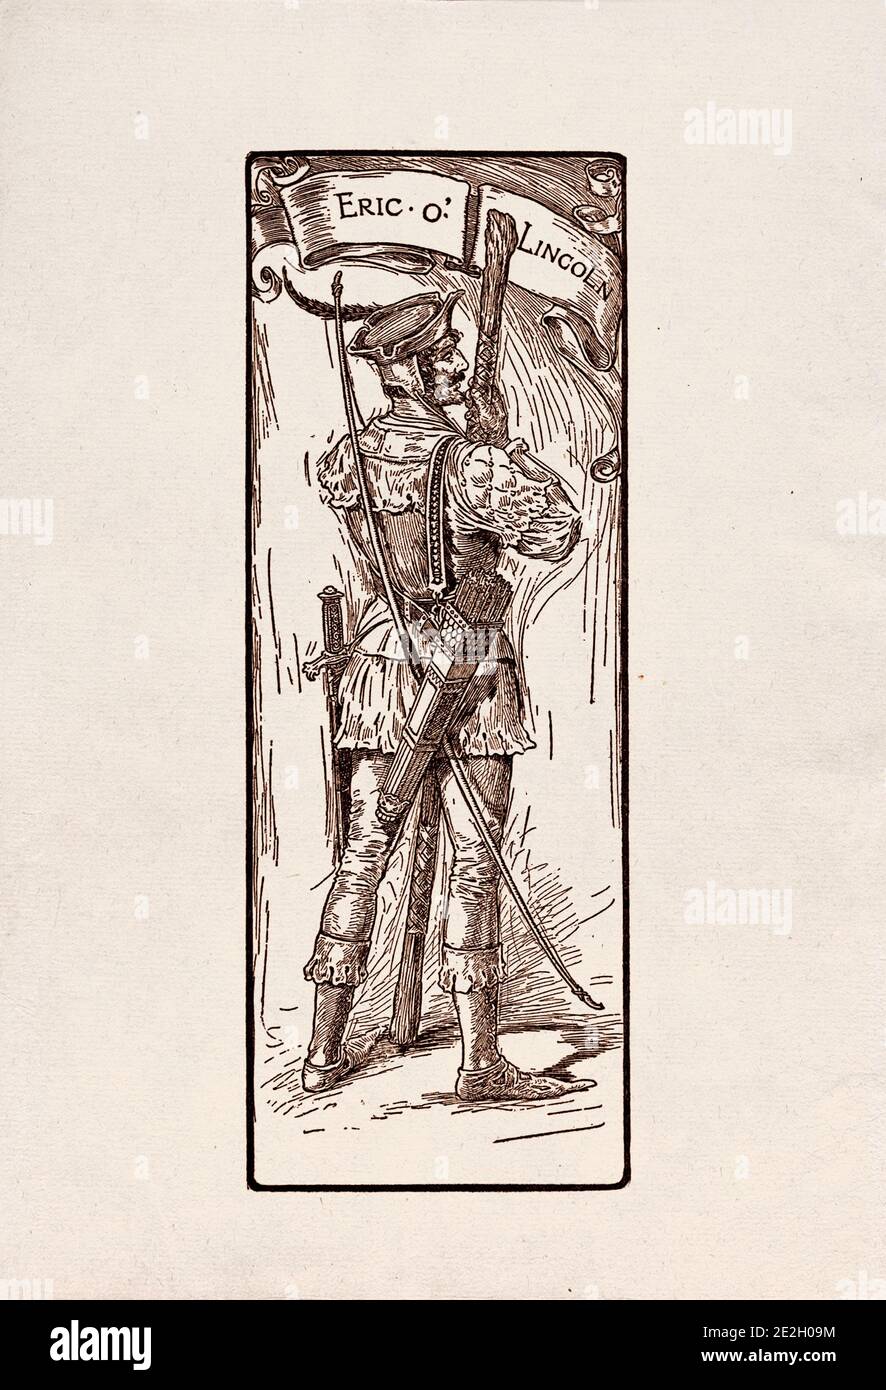 Gravure antique de personnages littéraires du folklore anglais des légendes Robin des Bois. Eric o' Lincoln. Par Louis Rhead. 1912 Banque D'Images